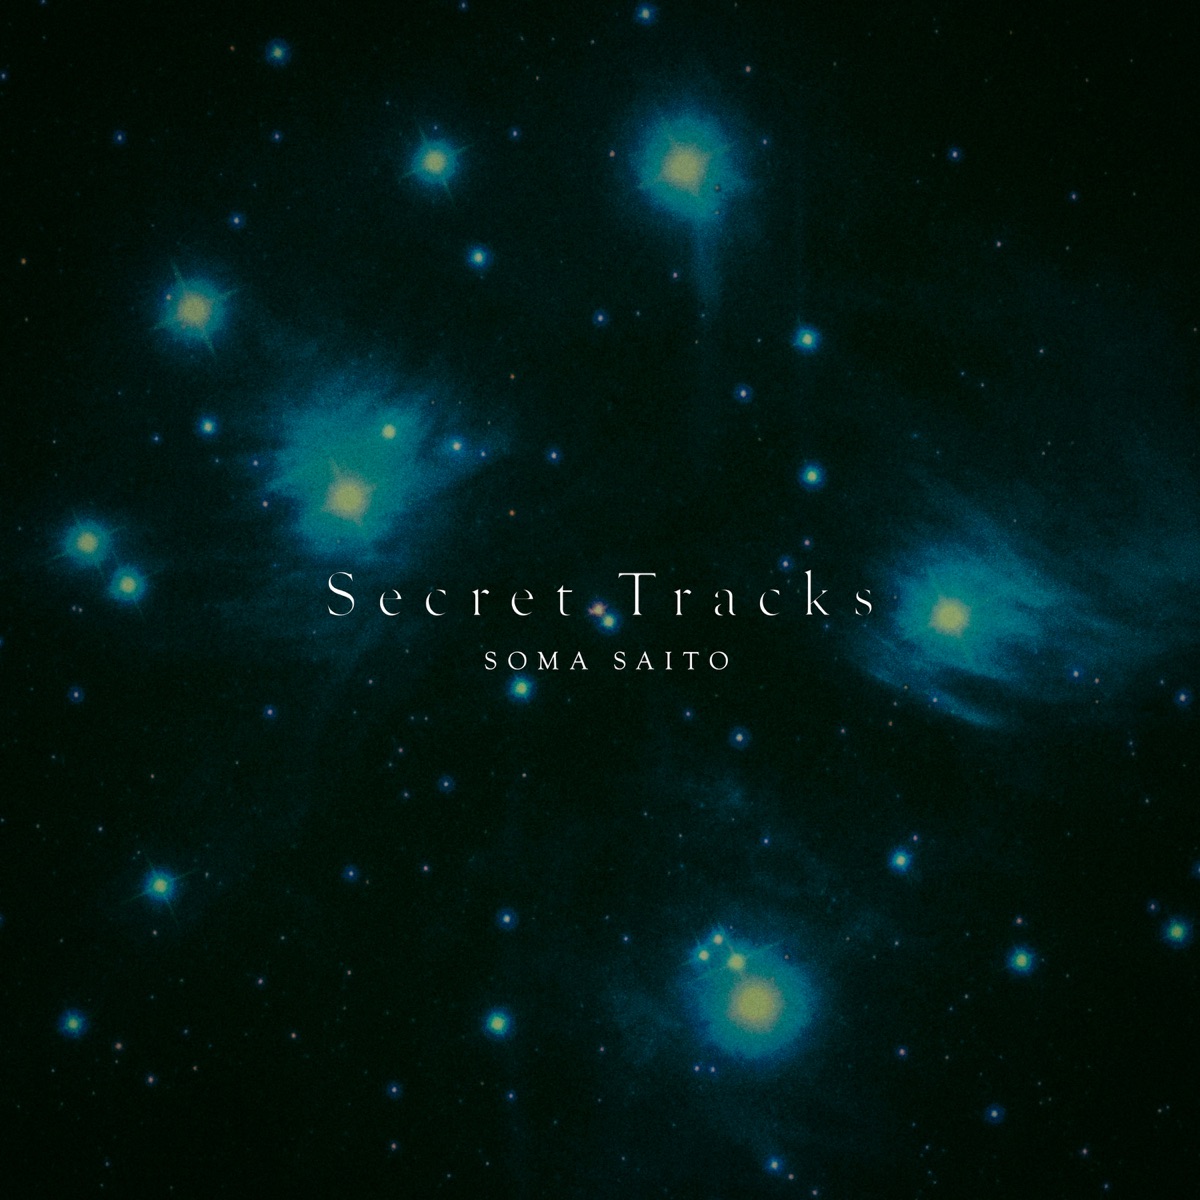 Cover art for『Soma Saito - Beer (Secret Track)』from the release『Secret Tracks』